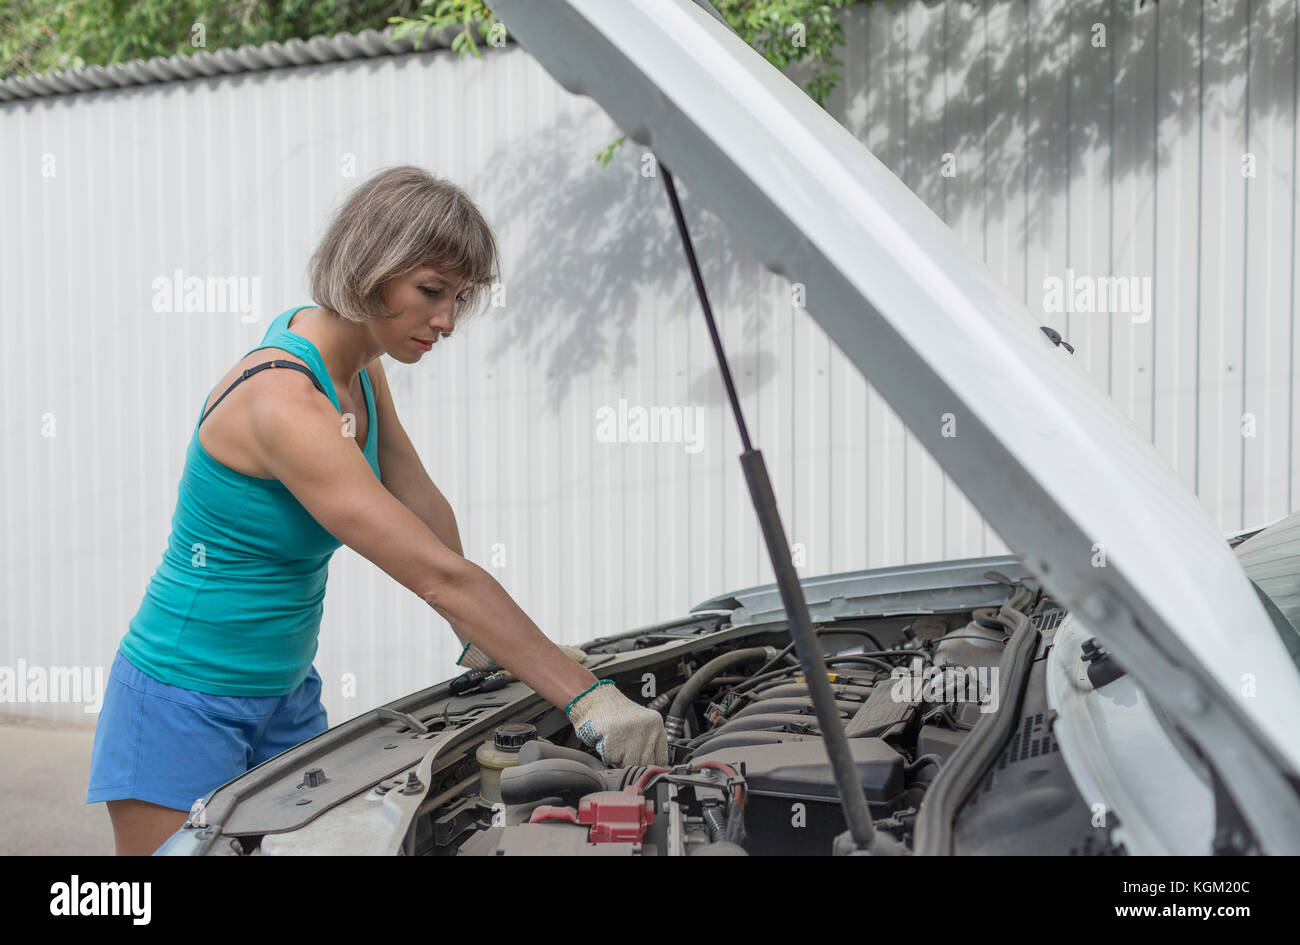 Mature woman repairing breakdown car Stock Photo